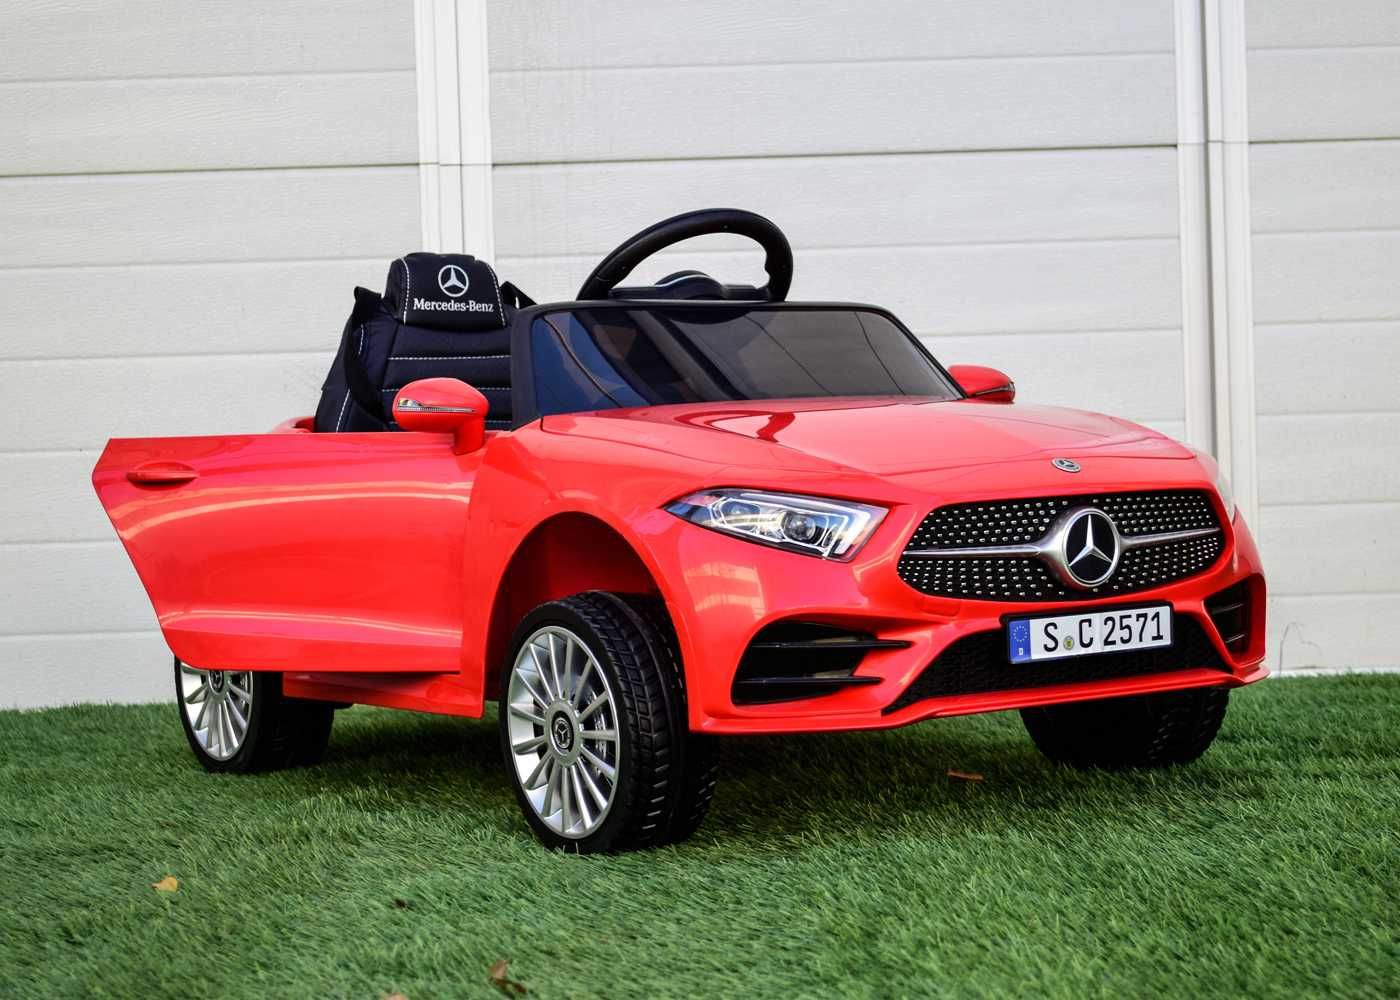 Masinuta electrica pentru copii Mercedes-Benz CLS350 2x 25W 12V #RED